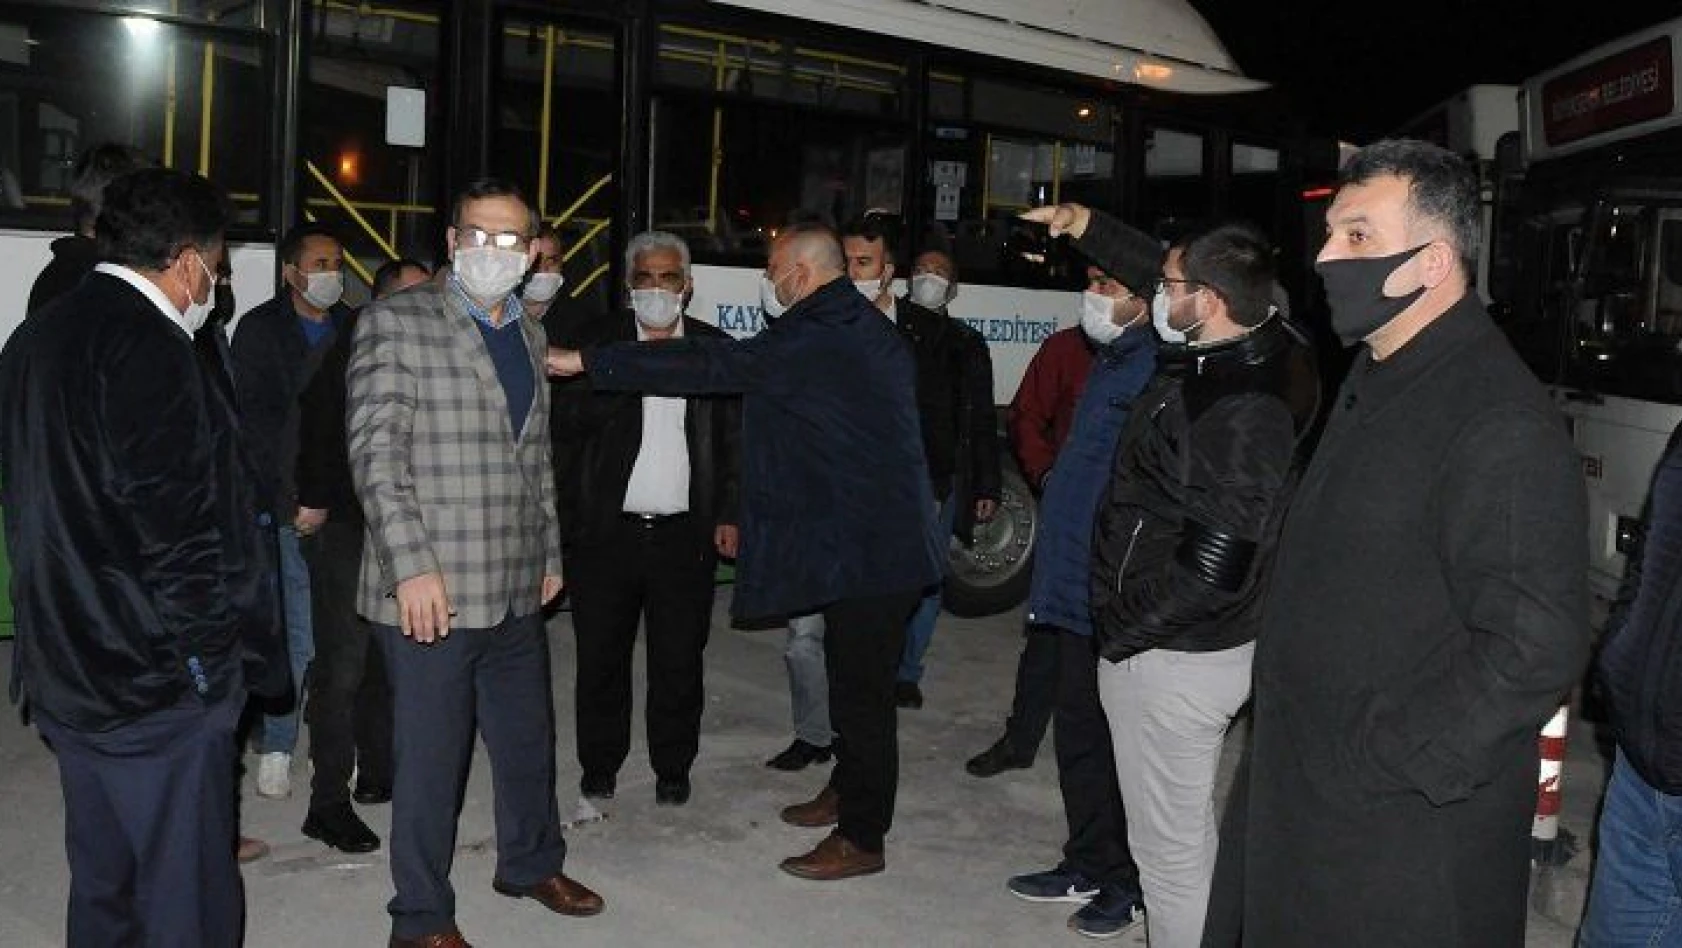 Halk otobüs şoförleri gönderilen 'mesaj' üzerine yol kapatıp eylem yaptı